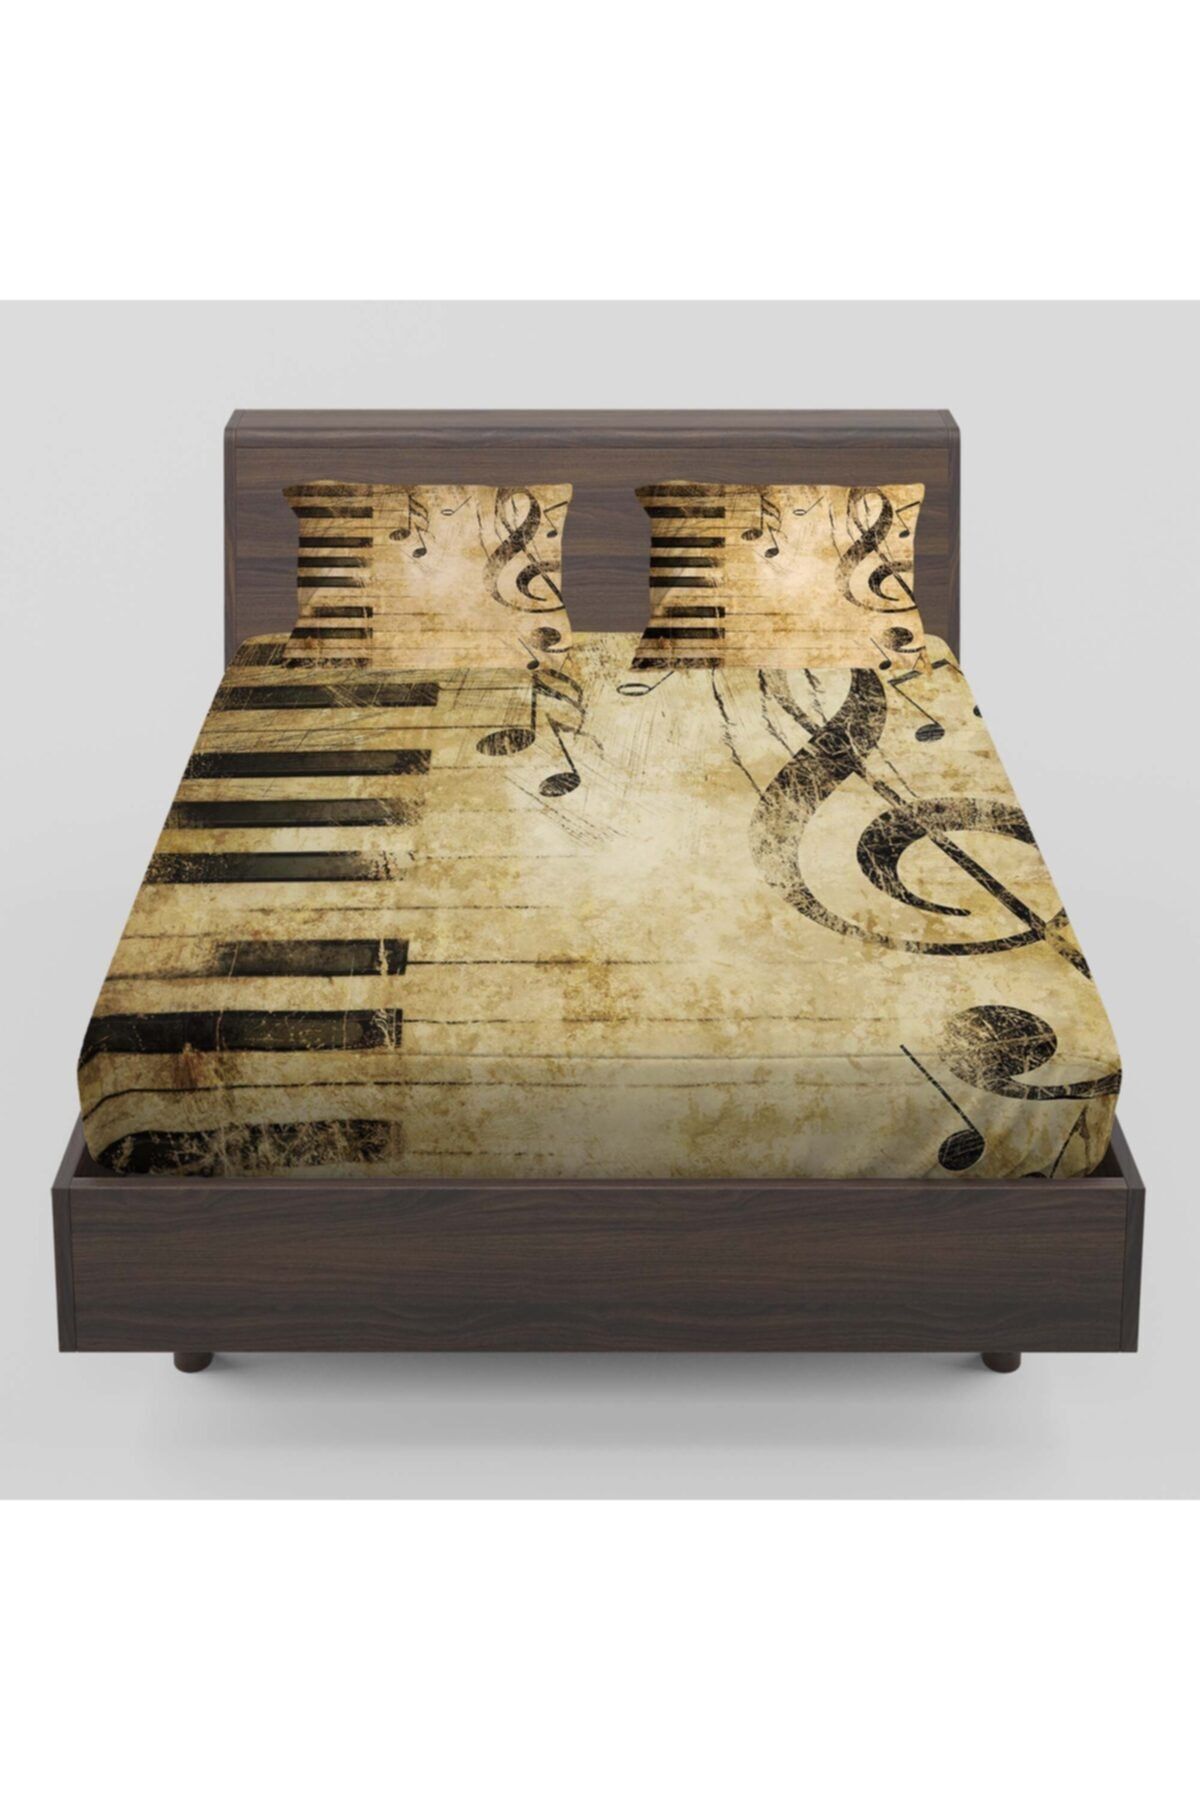 Else Halı Else Sarı Siyah Notalar Piyano Desenli Lastikli Çift Kişilik Lastikli Çarşaf Takımı 160x200cm